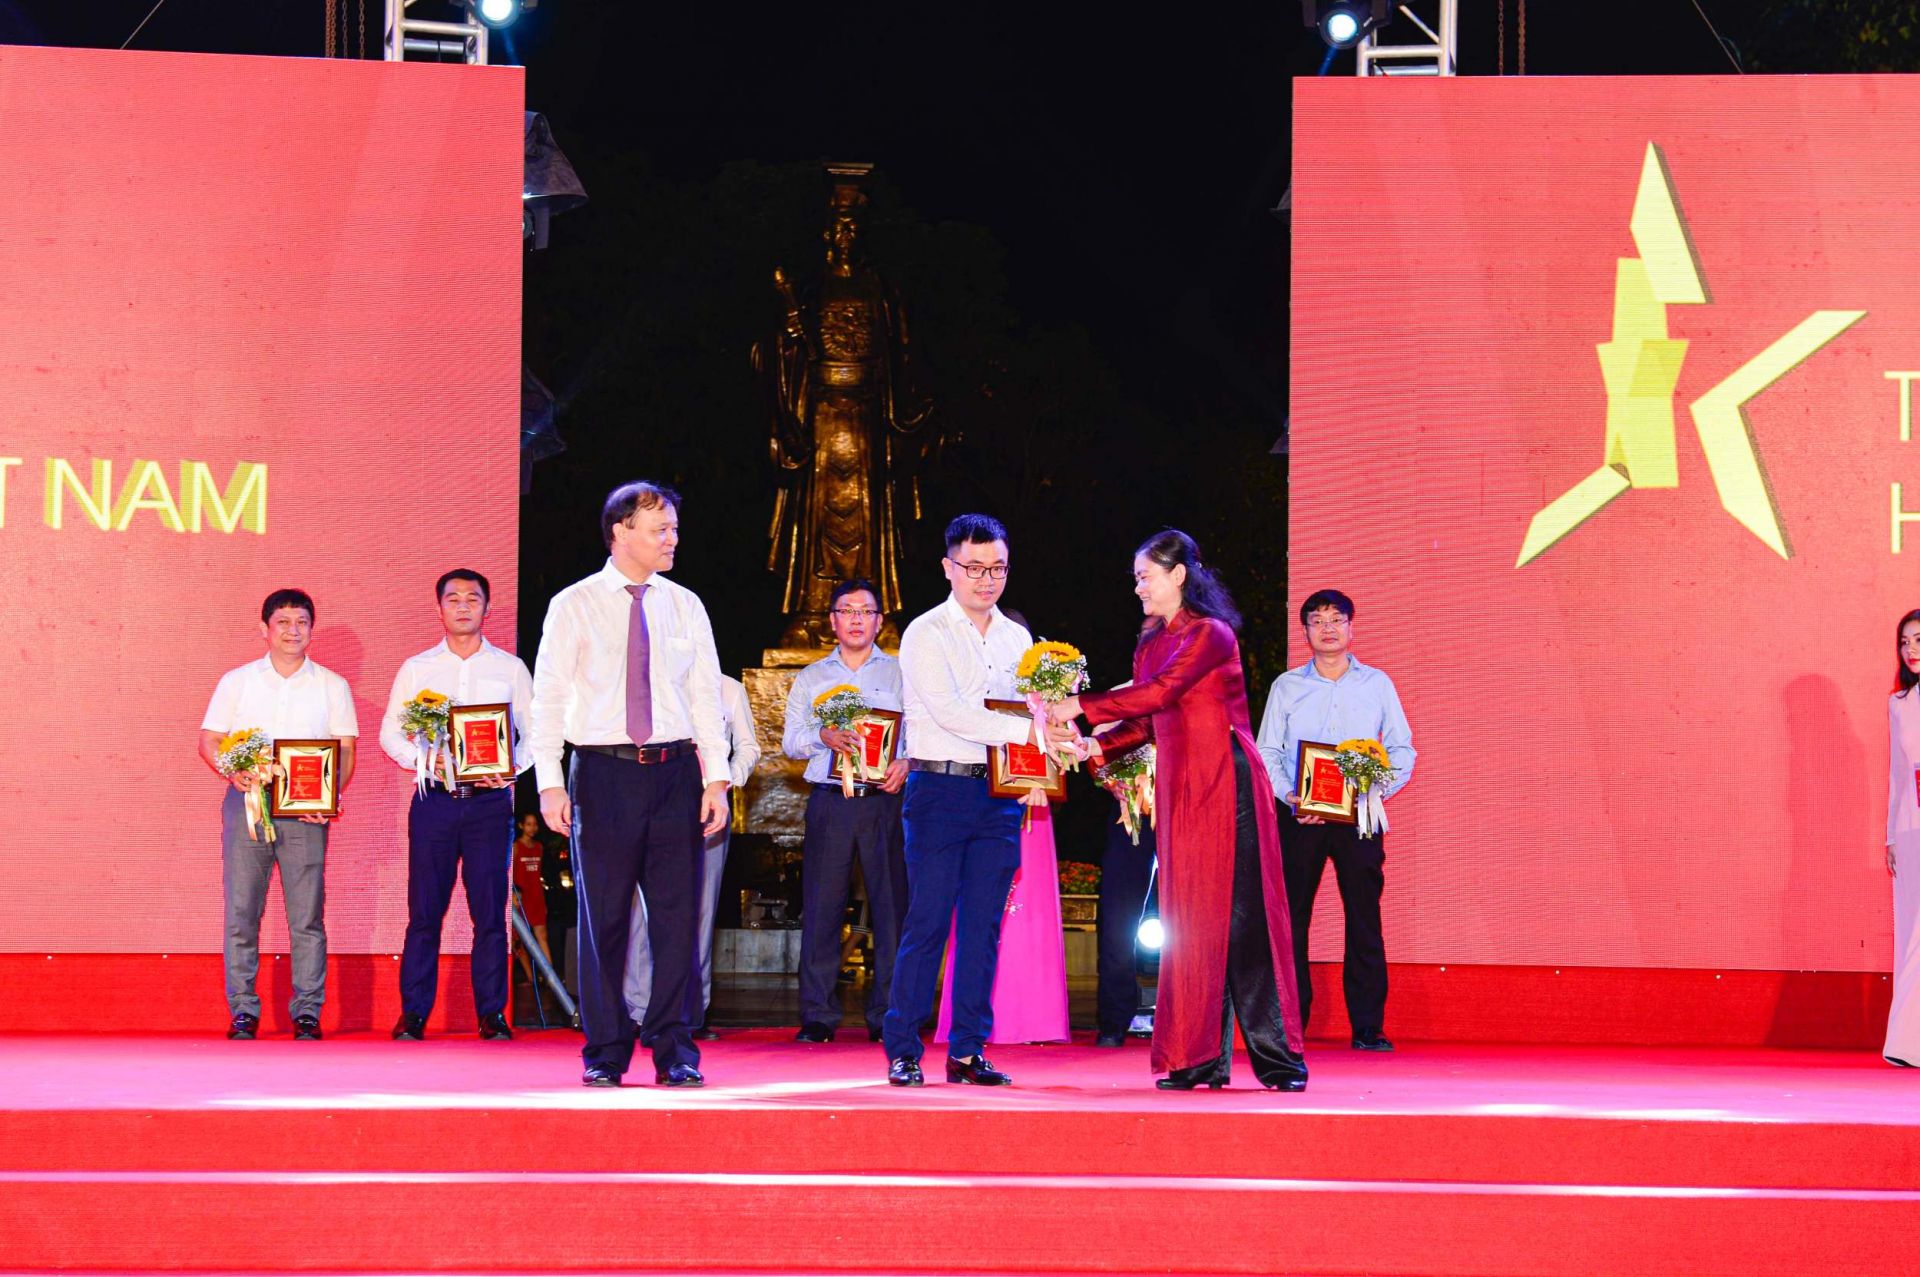 Thứ trưởng Bộ Công Thương Đỗ Thắng Hải (trái) và Phó Chủ tịch Hội Liên hiệp Phụ nữ Việt Nam Đỗ Thị Thu Thảo (phải) trao kỷ niệm chương cho đại diện Bánh pía Tân Huê Viên